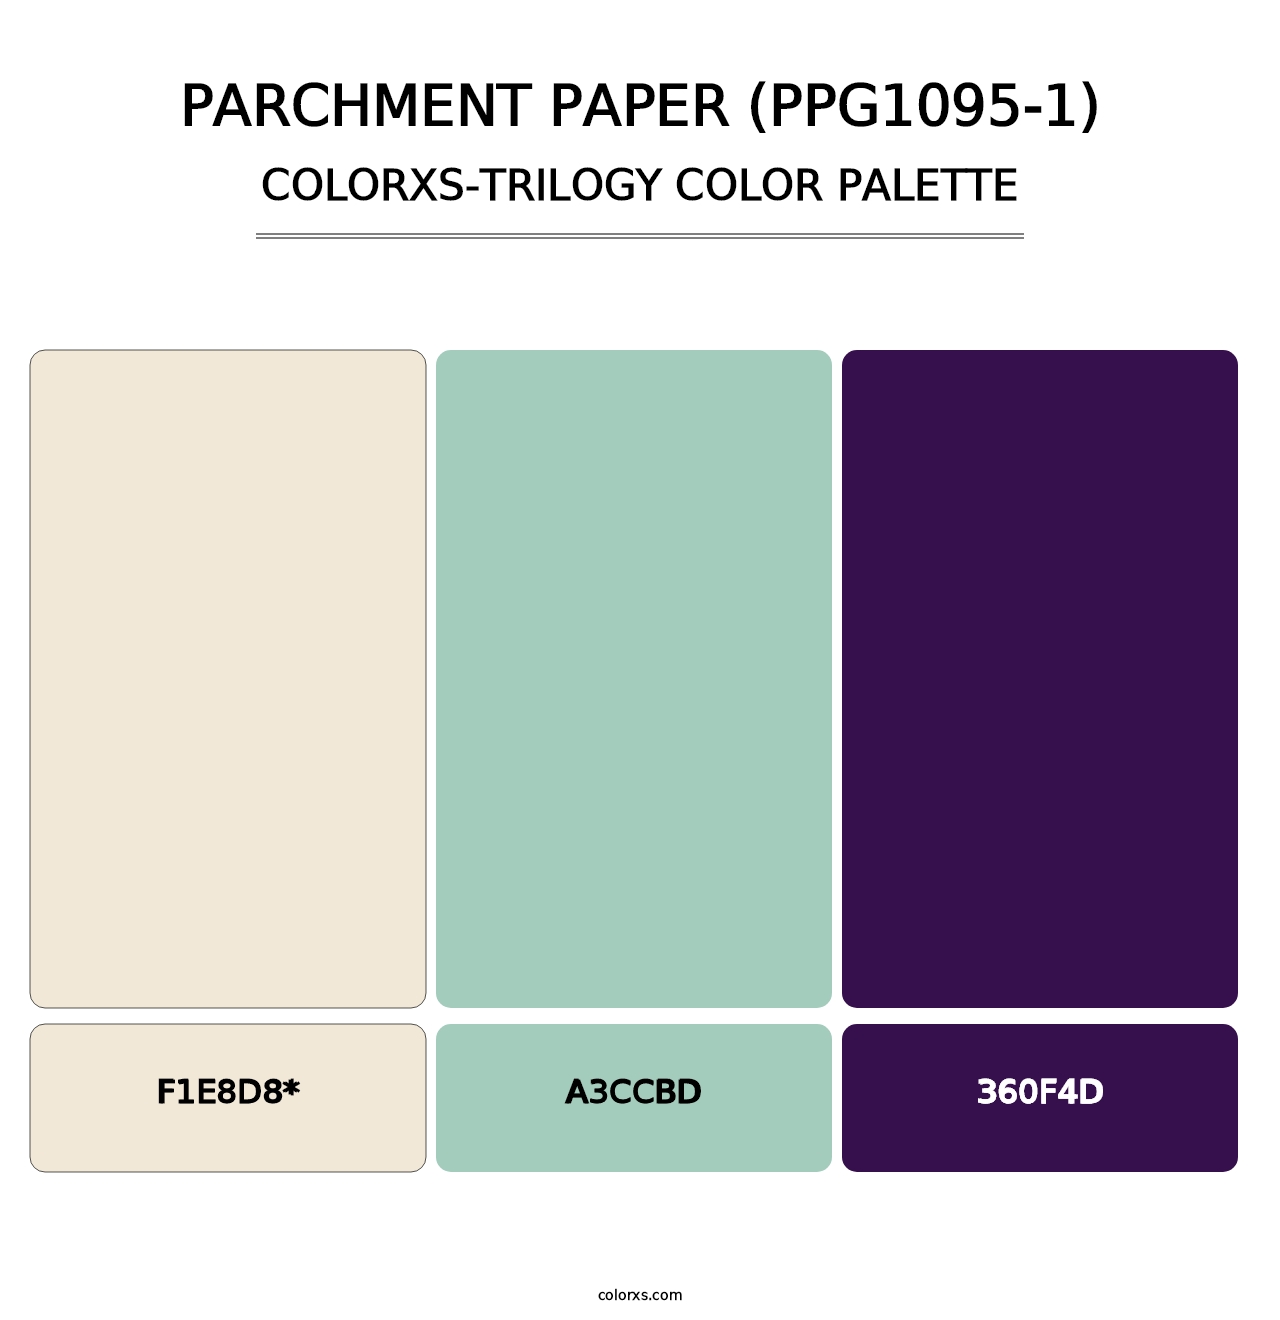 Parchment Paper (PPG1095-1) - Colorxs Trilogy Palette